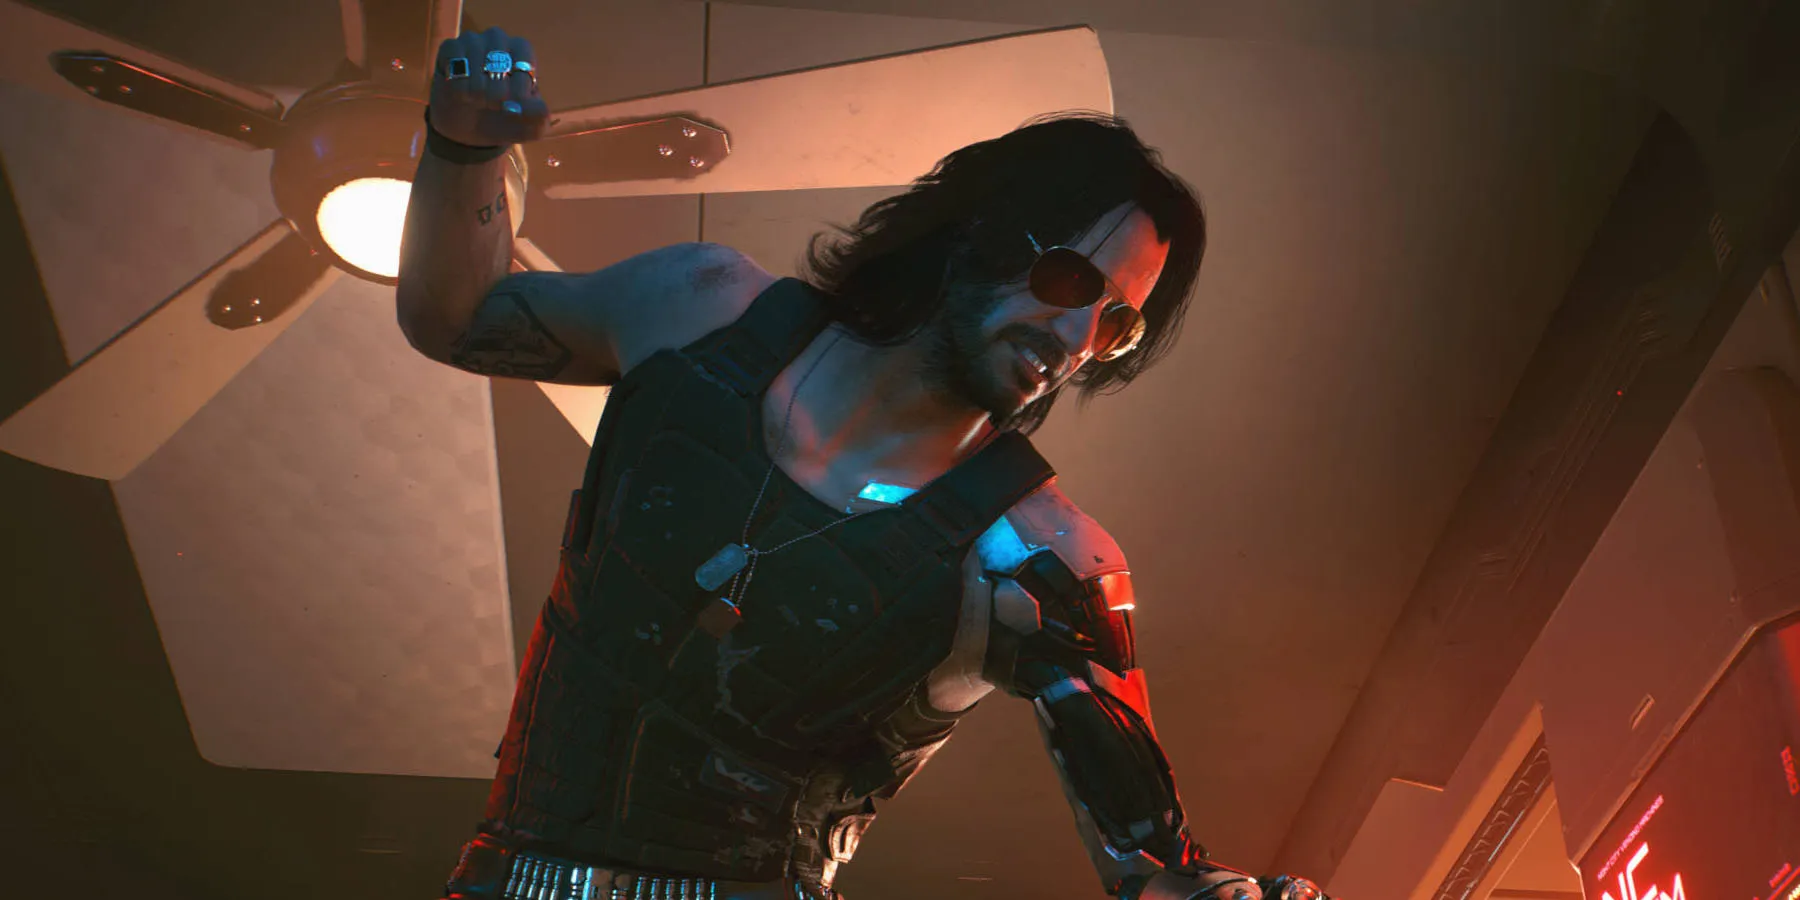 Скриншот Джонни Сильверхенда, сражающегося в клубе в игре Cyberpunk 2077.